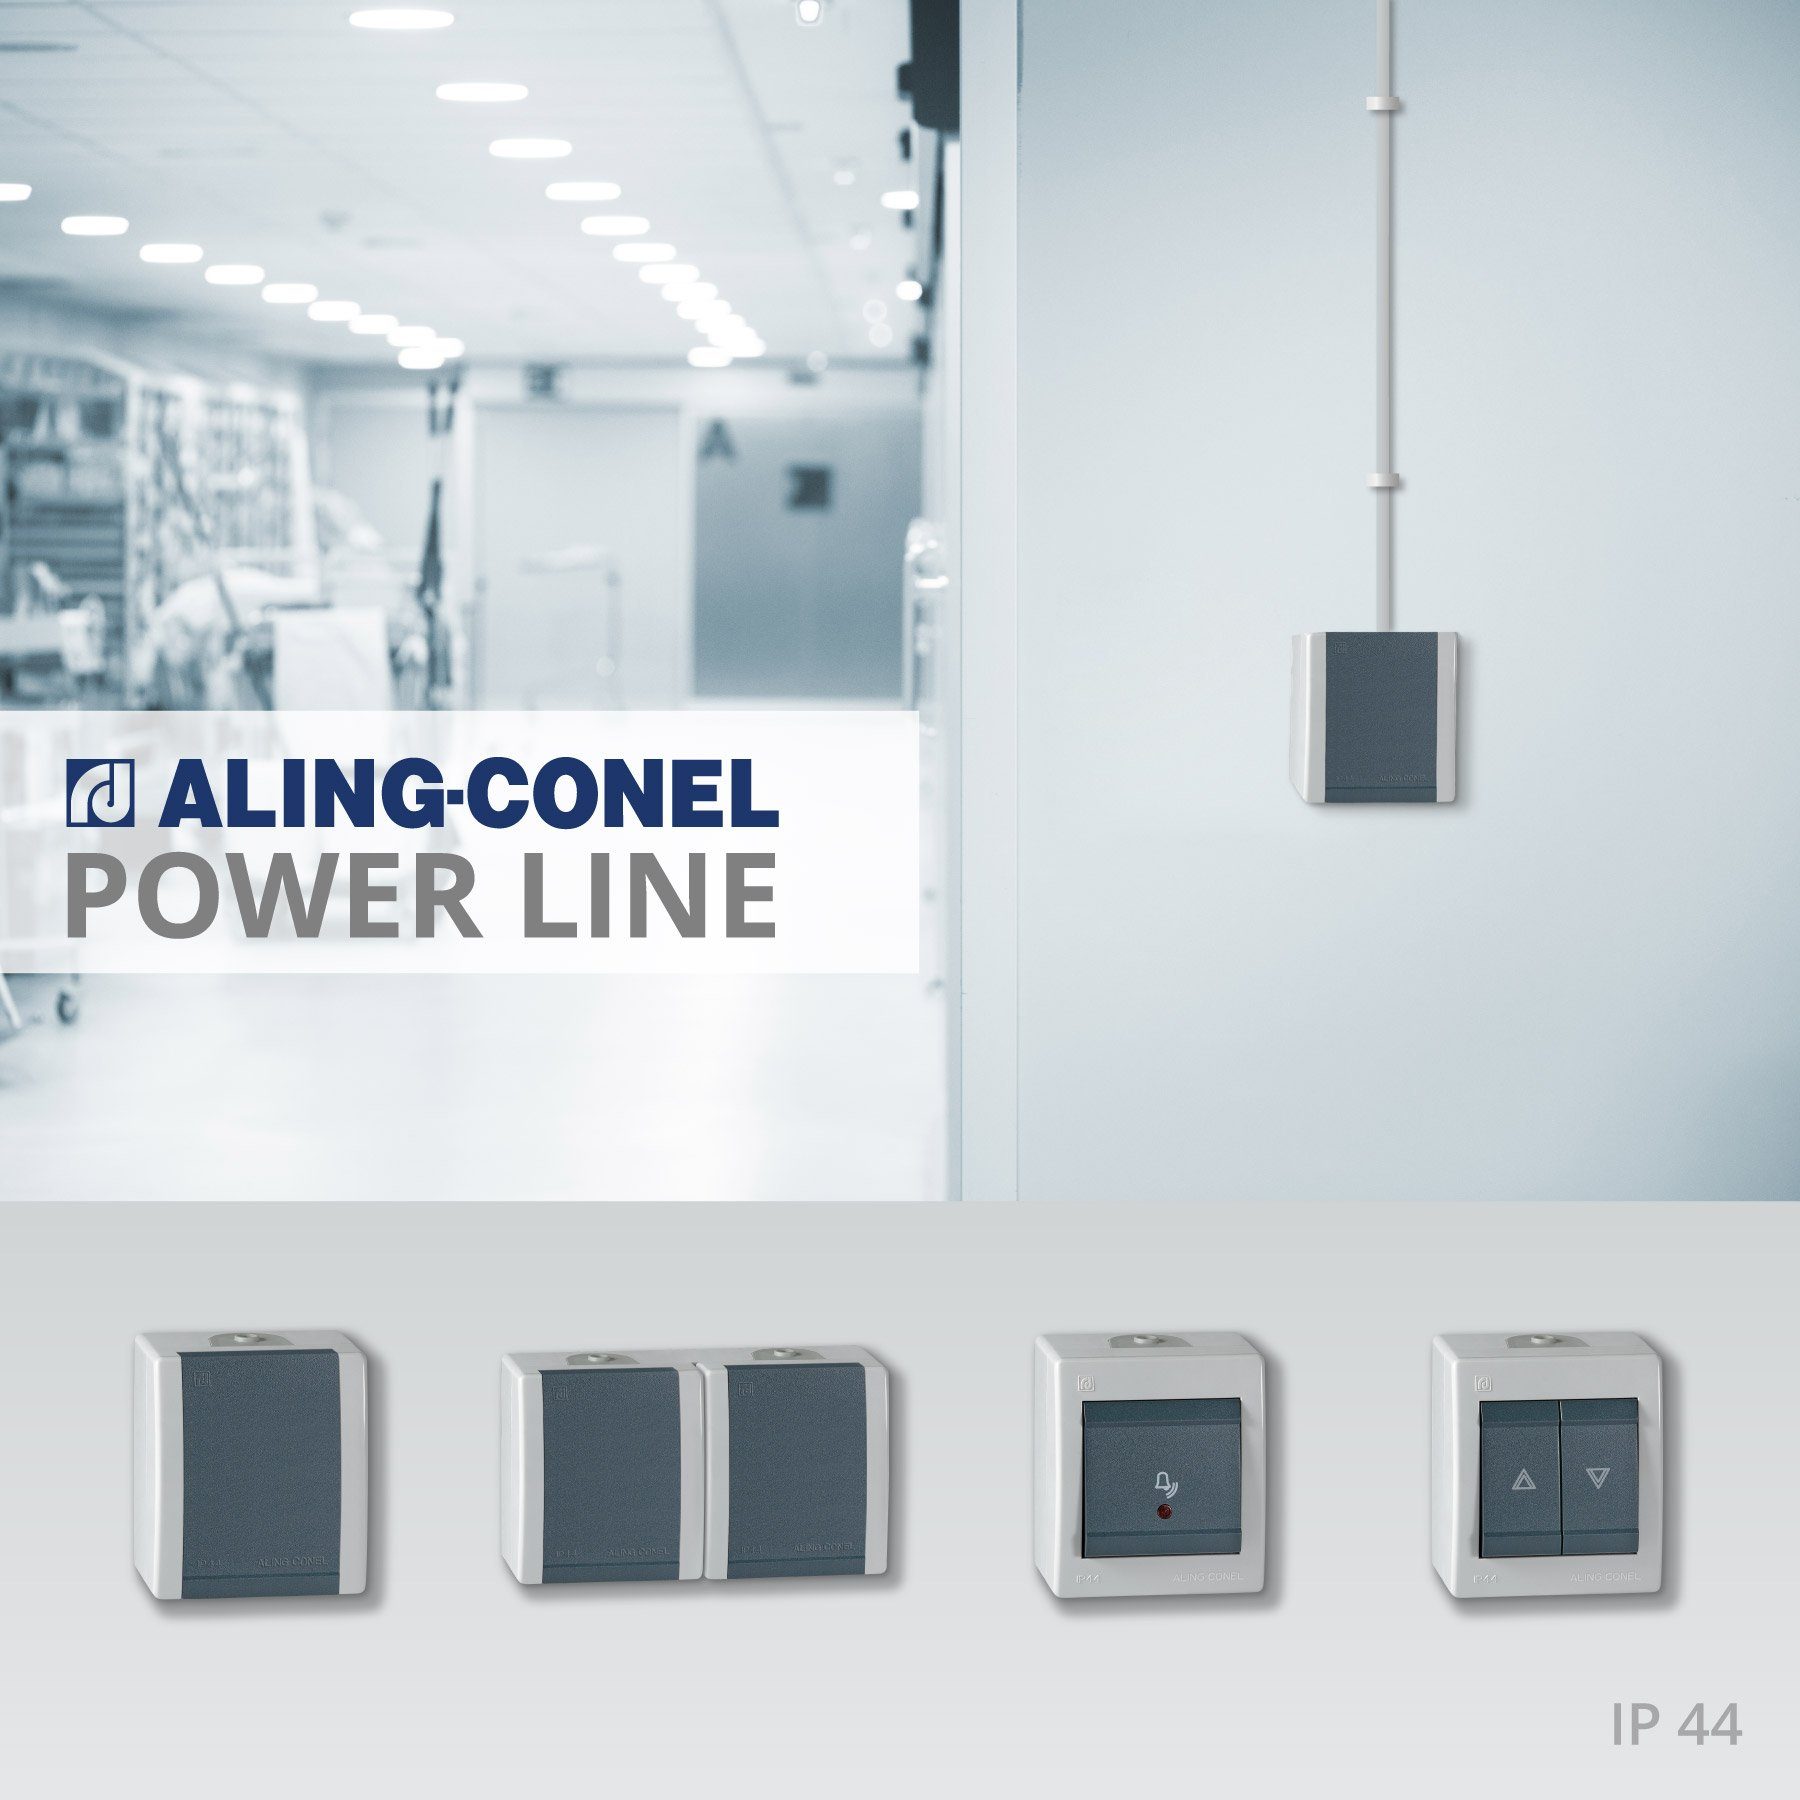 Line Aufputz-Taster, 44 Conel weiß Schalter Aling Power IP